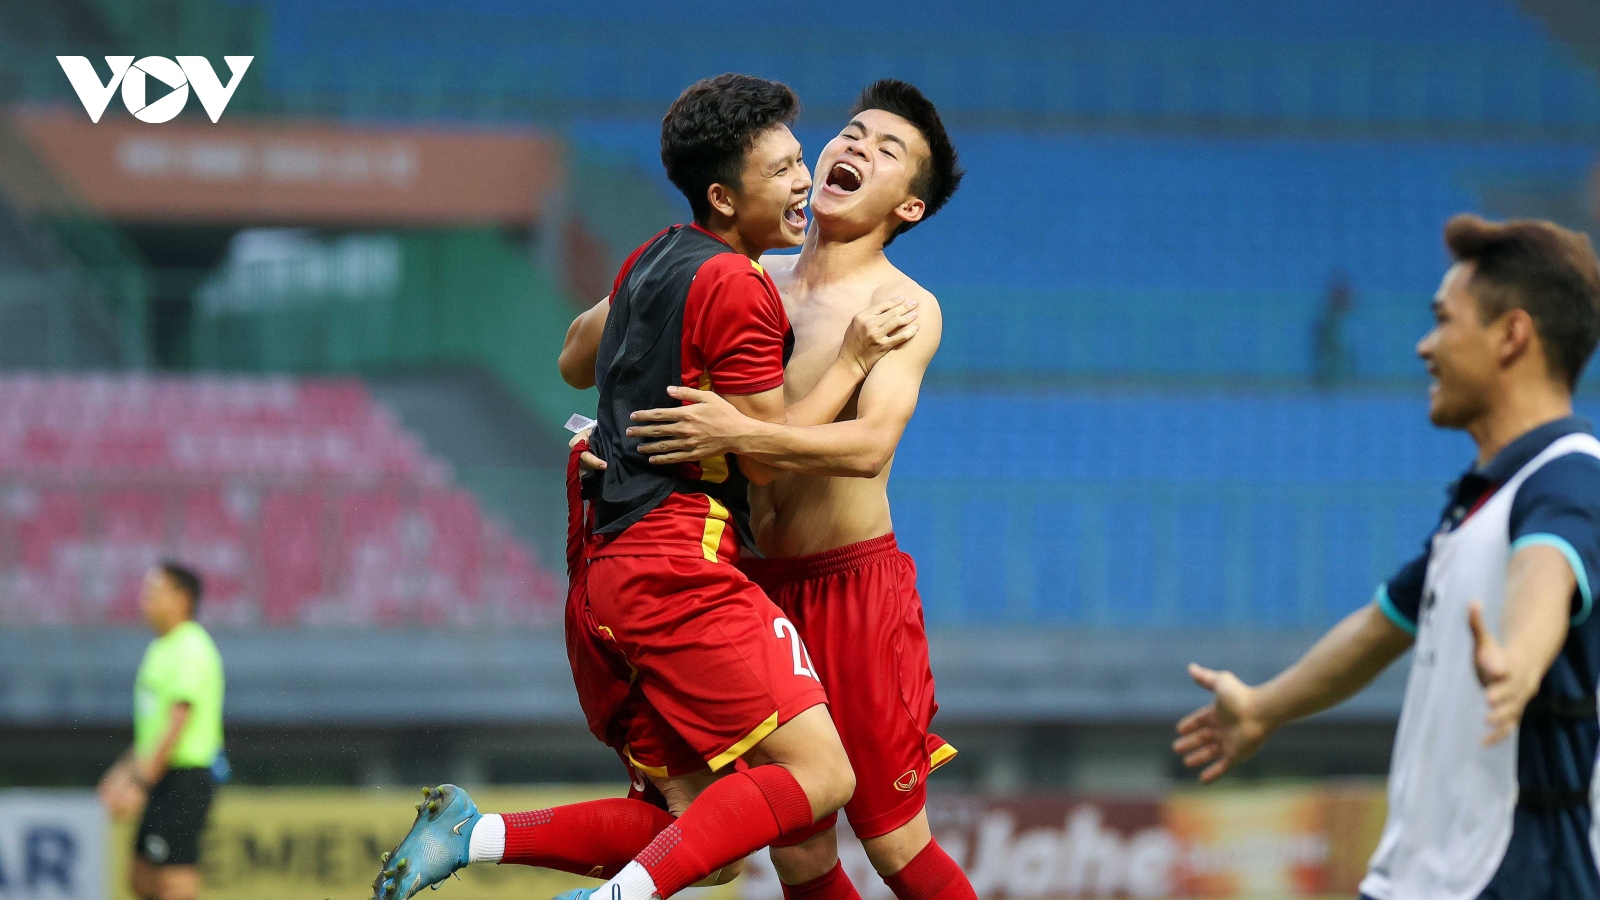 HLV Đinh Thế Nam: “U19 Việt Nam bản lĩnh và may mắn hơn U19 Thái Lan”